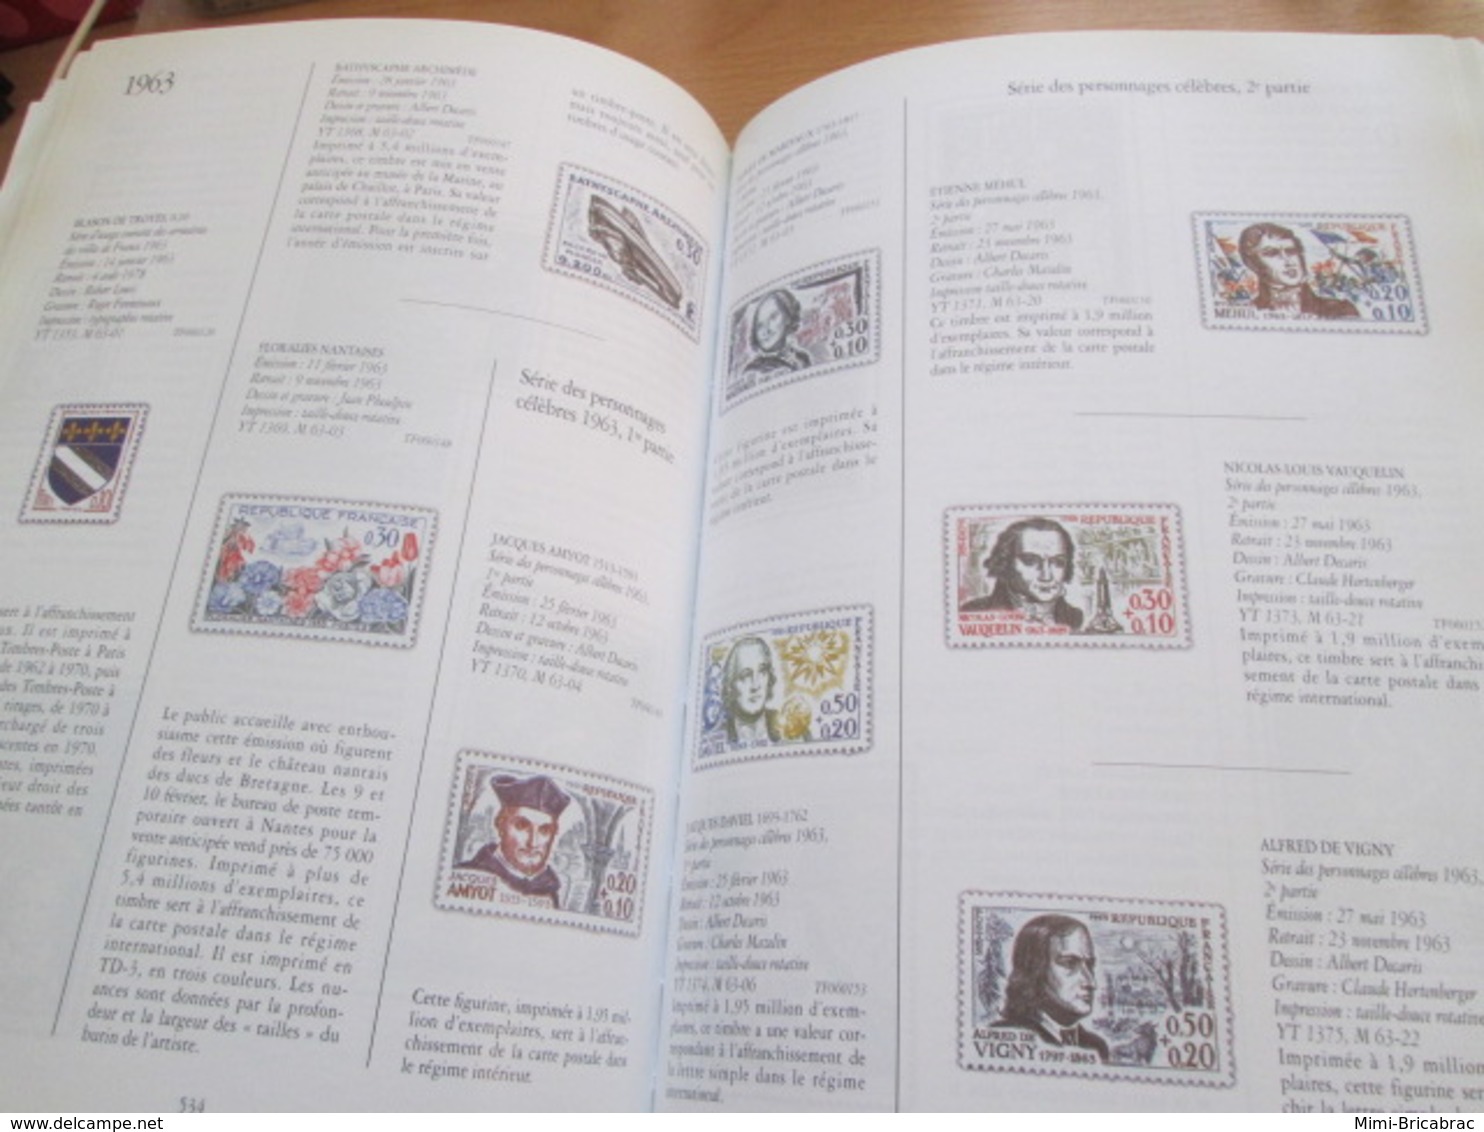 CAGI4 : LE PATRIMOINE DU TIMBRE POSTE FRANCAIS  Flohic éditions 1998  Format : couverture rigide, 25 x 18,5 cm, 927 page